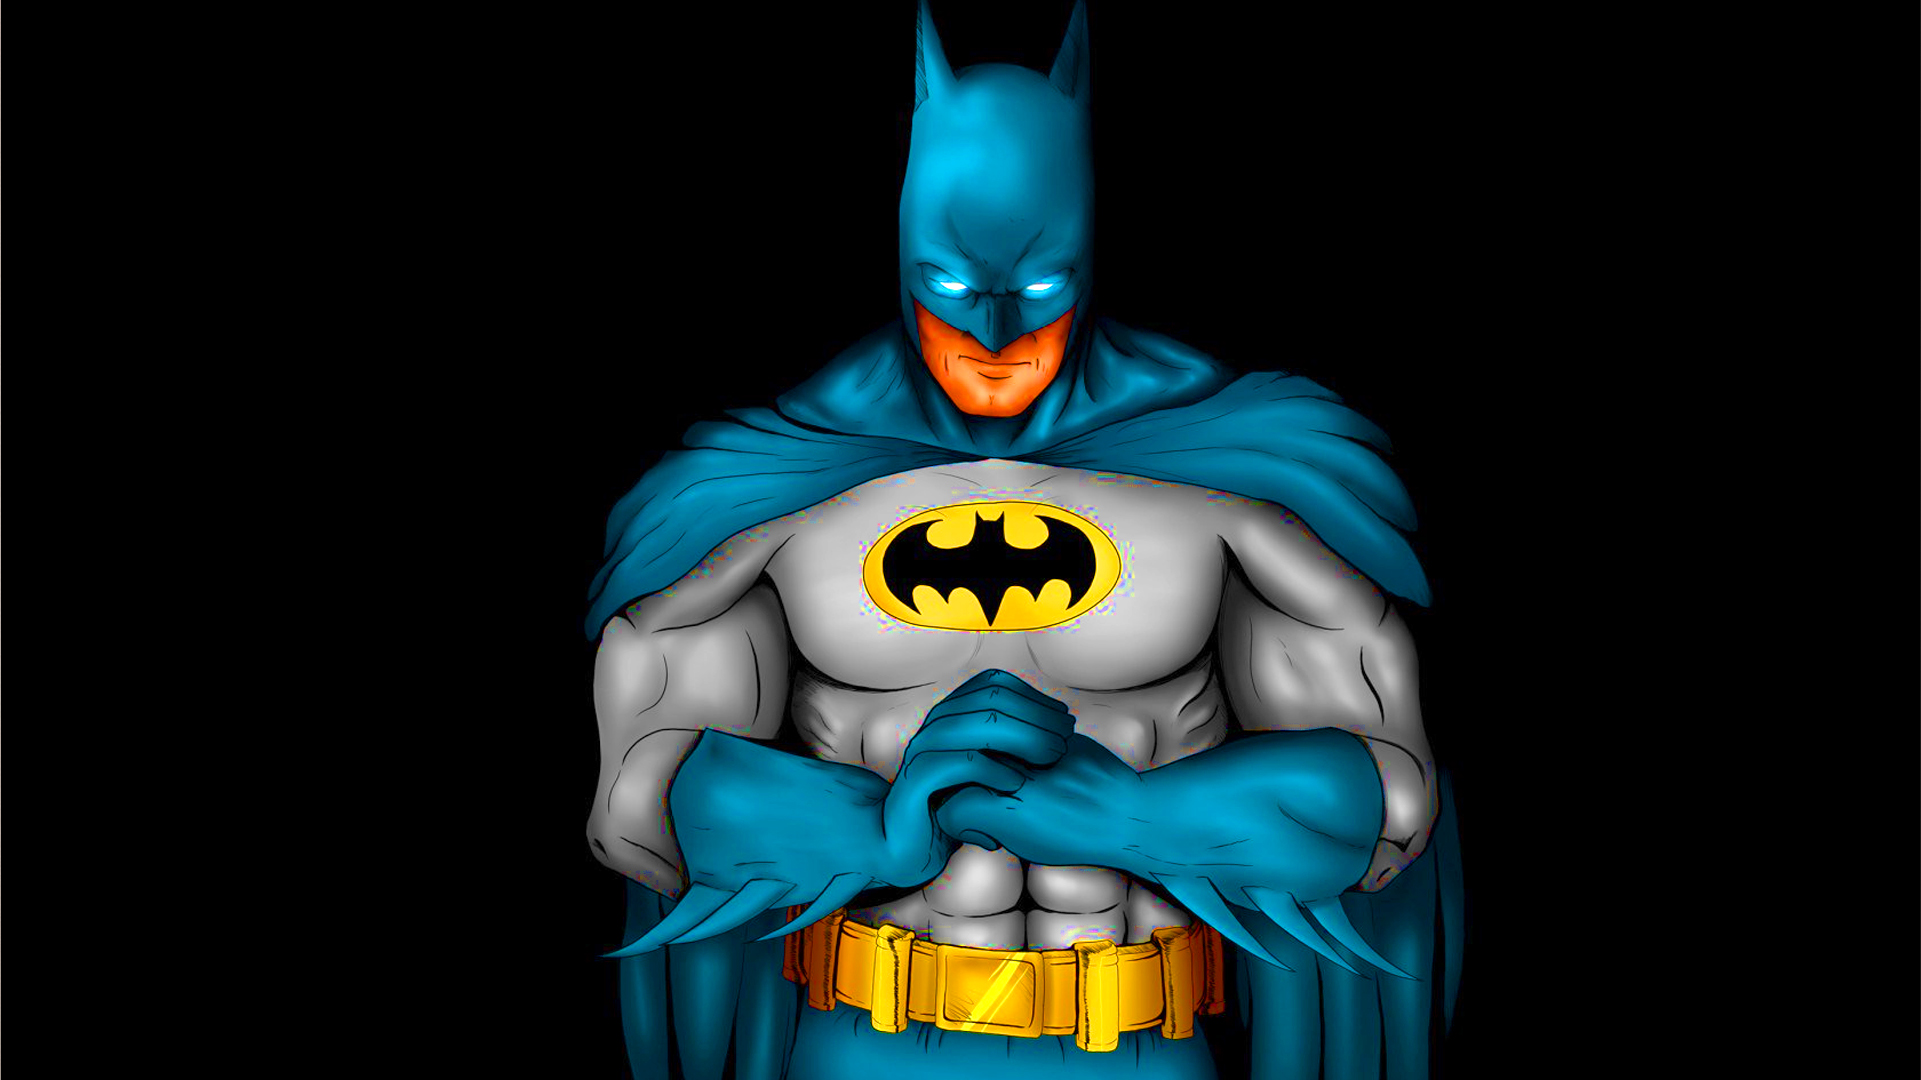 Batman Cartoon Wallpaper HD - WallpaperSafari